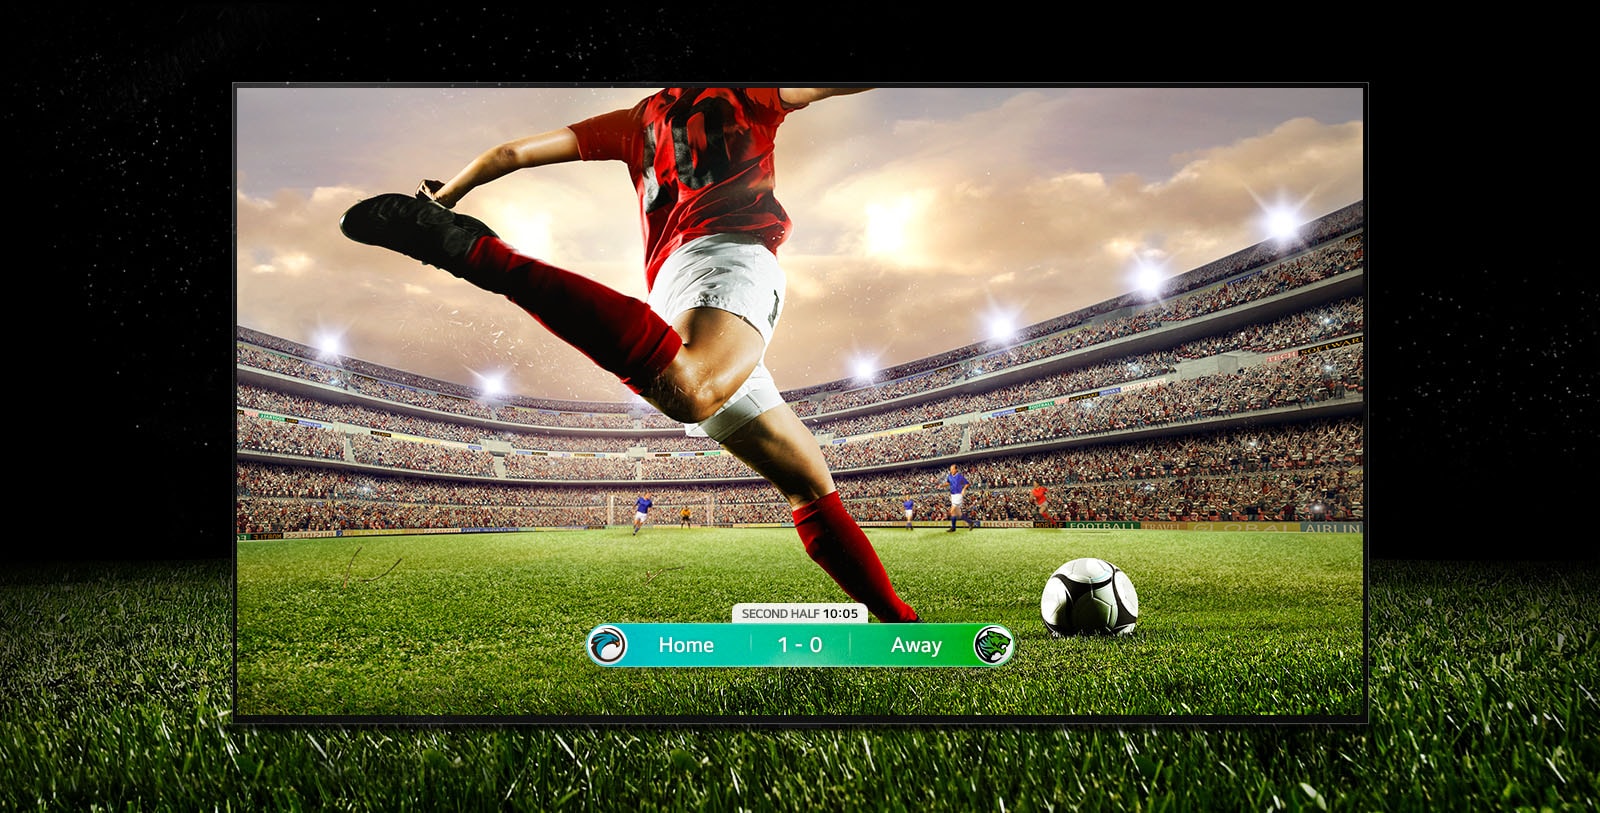 صورة للشاشة تظهر مباراة كرة قدم مع لاعب يرتدي شريطًا أحمر على وشك ركل الكرة عبر الملعب. تظهر نتيجة اللعبة في أسفل الشاشة. يمتد العشب الأخضر من الملعب إلى ما وراء الشاشة إلى الخلفية السوداء.